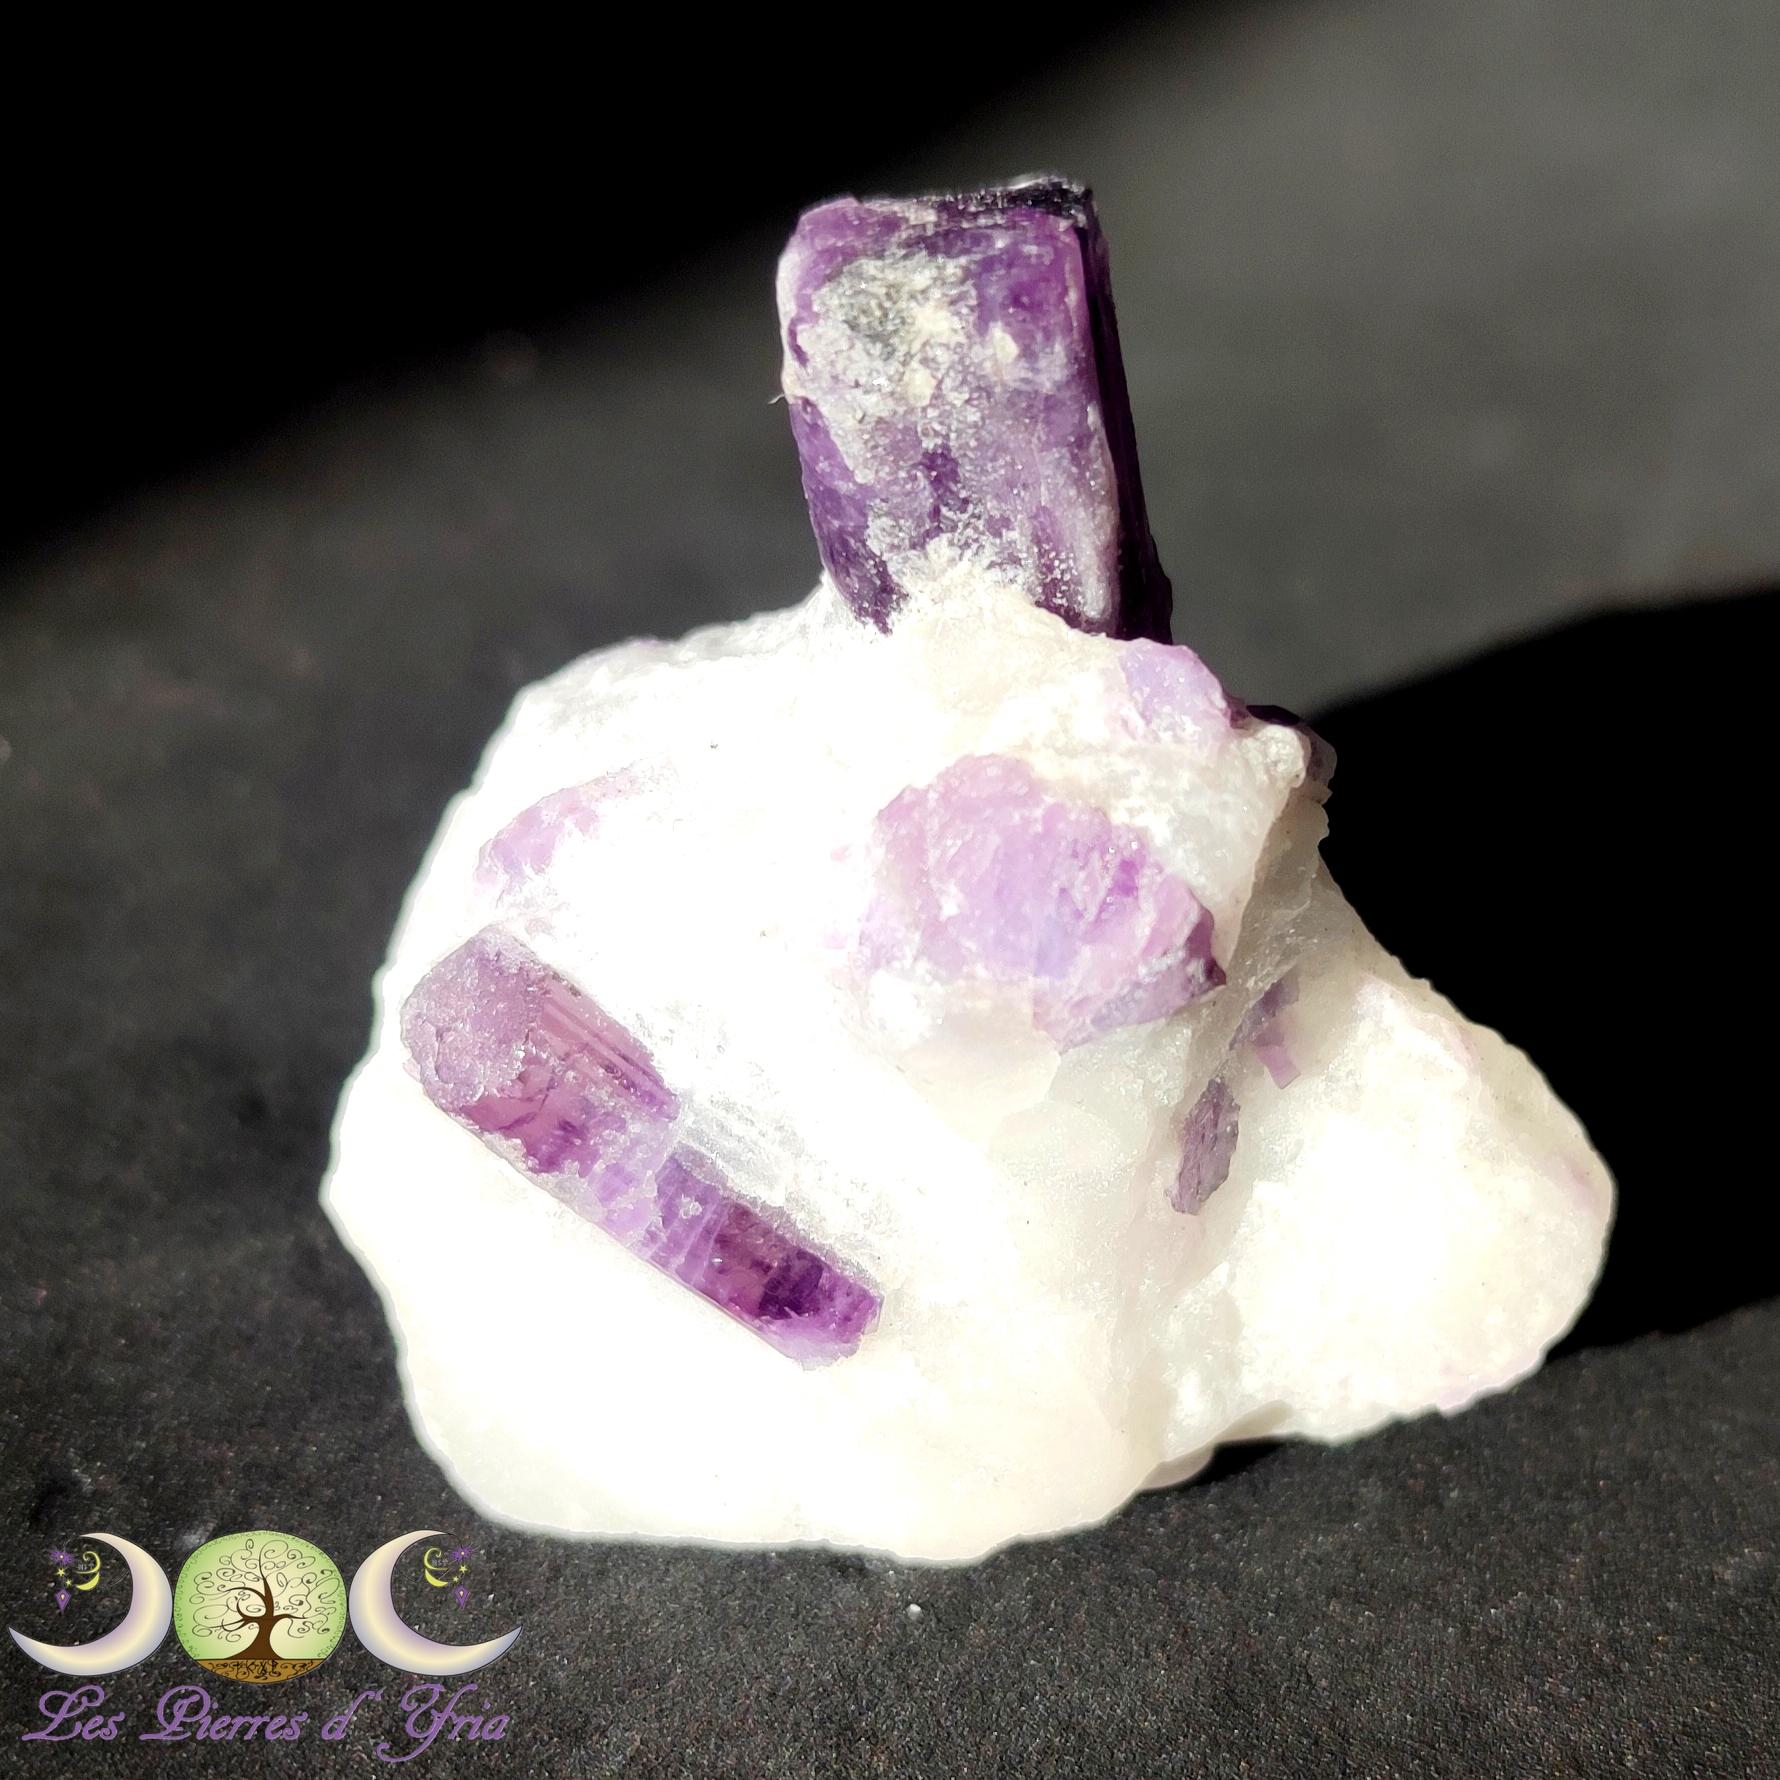 1 scapolite pierre violette rare 2 